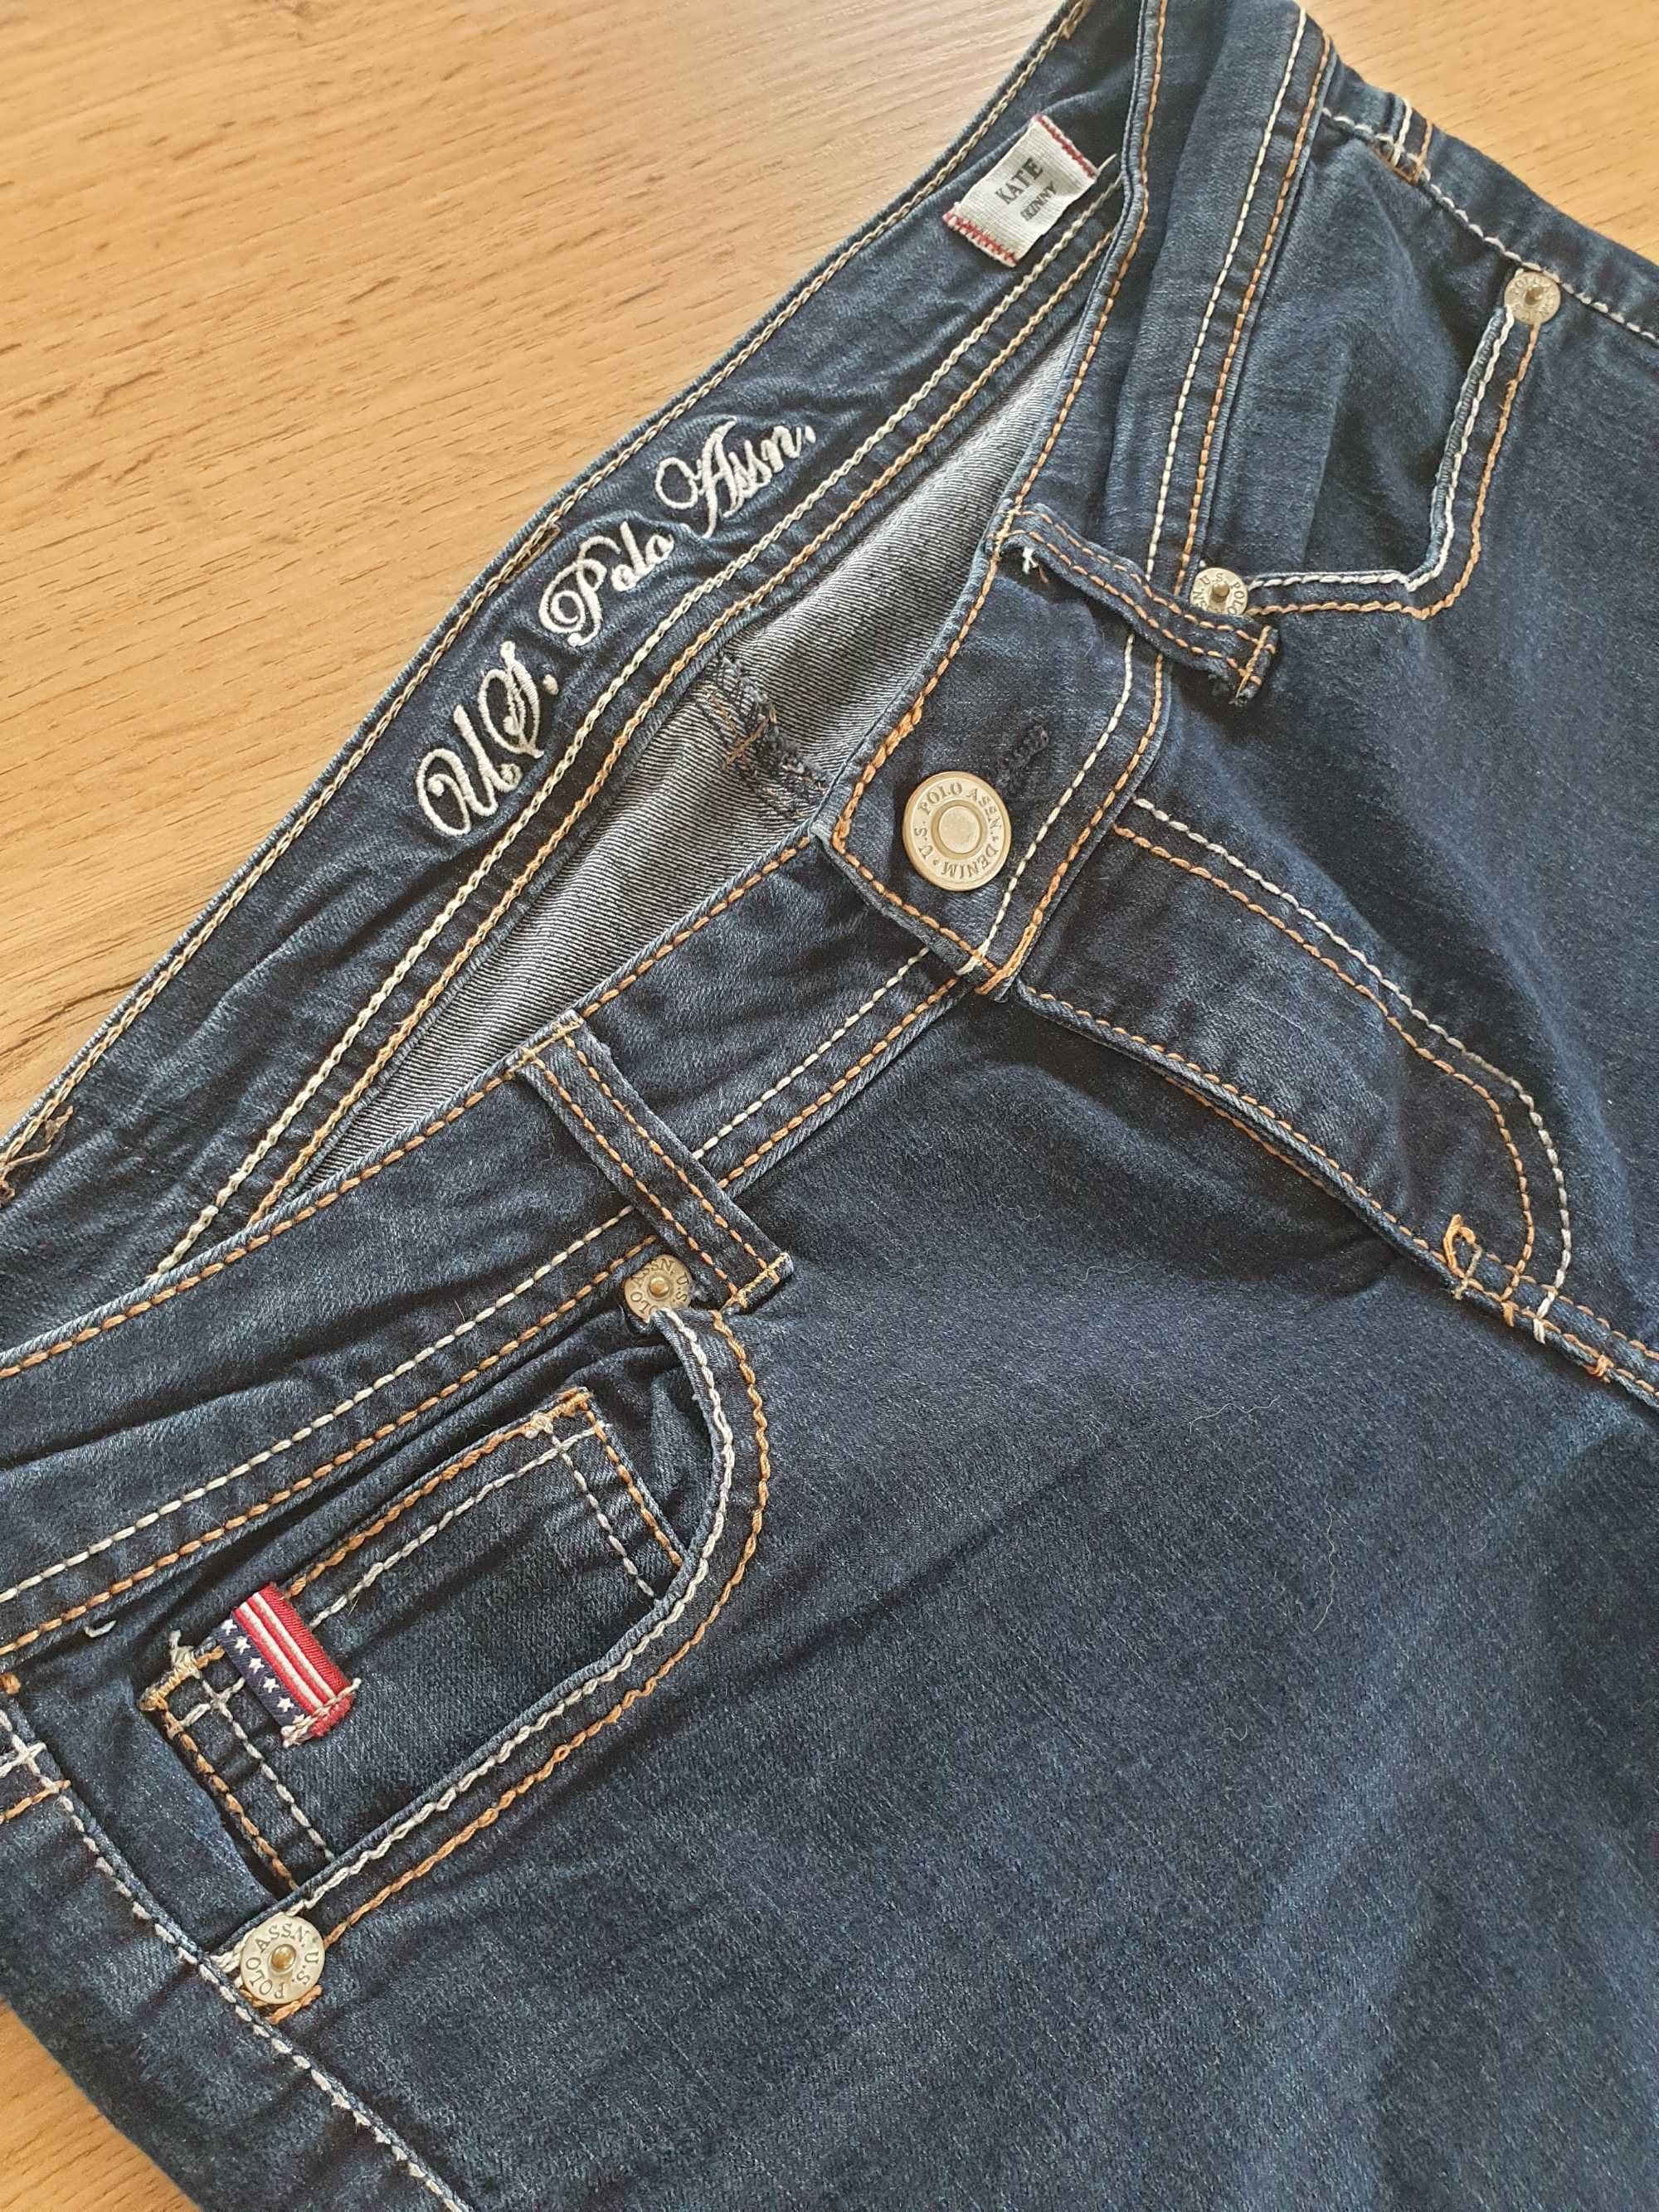 Spodnie jeansowe, skinny, 81% bawełna, U.S. Polo Assn., rozmiar L